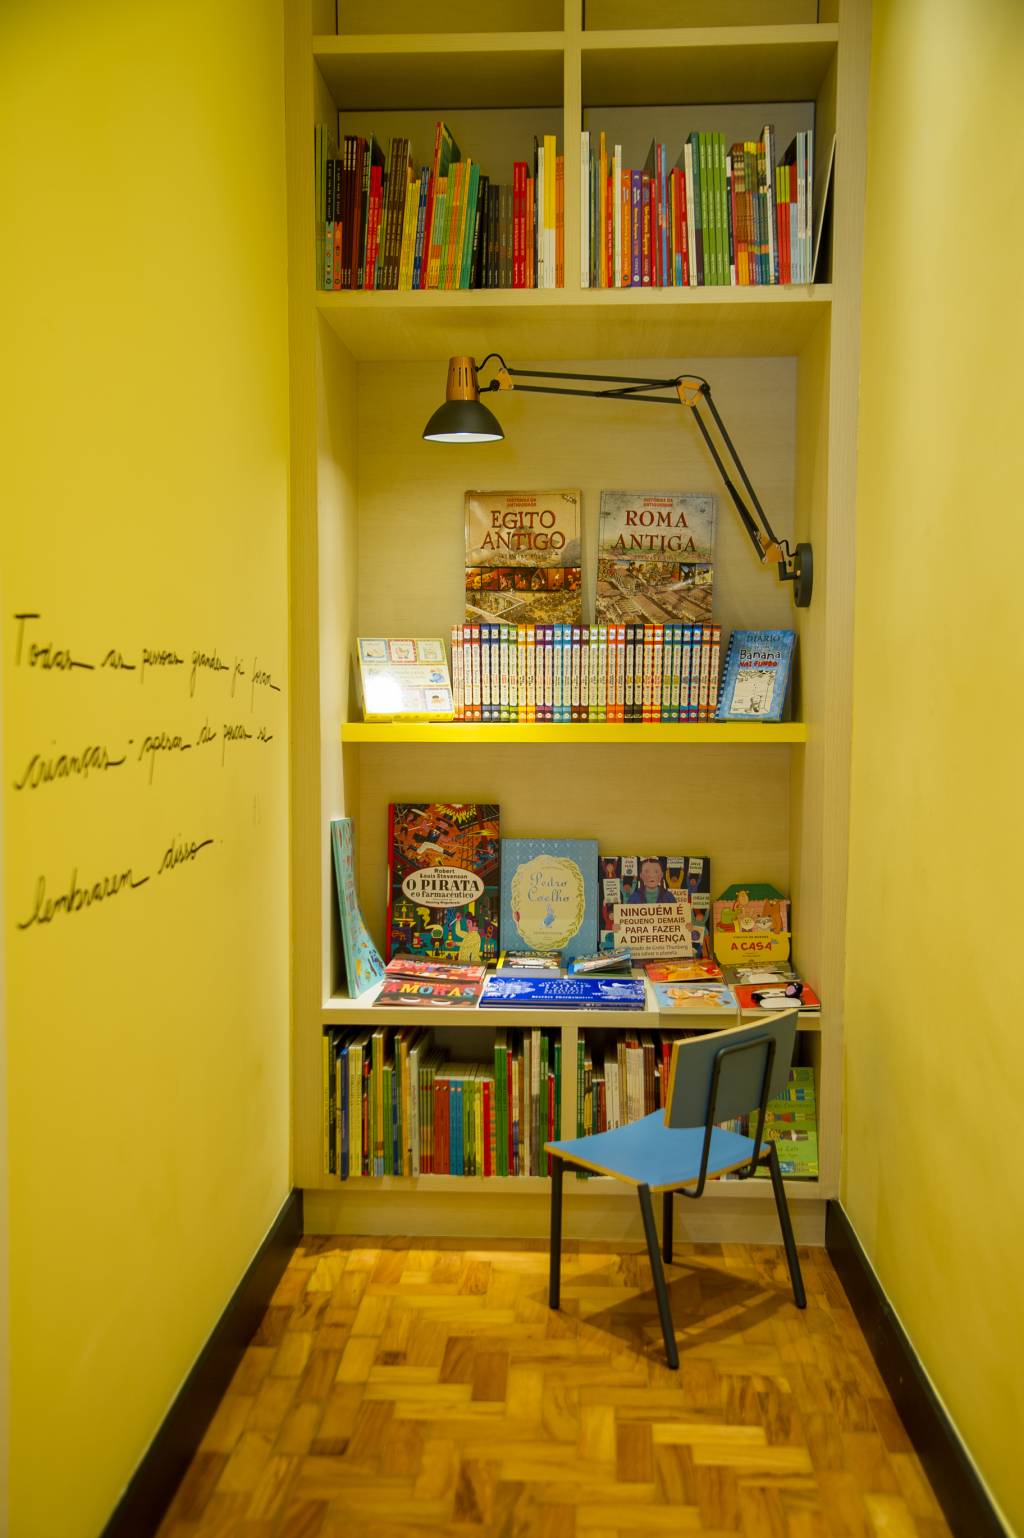 Pequeno vão reúne uma cadeira infantil e livros coloridos no fundo.